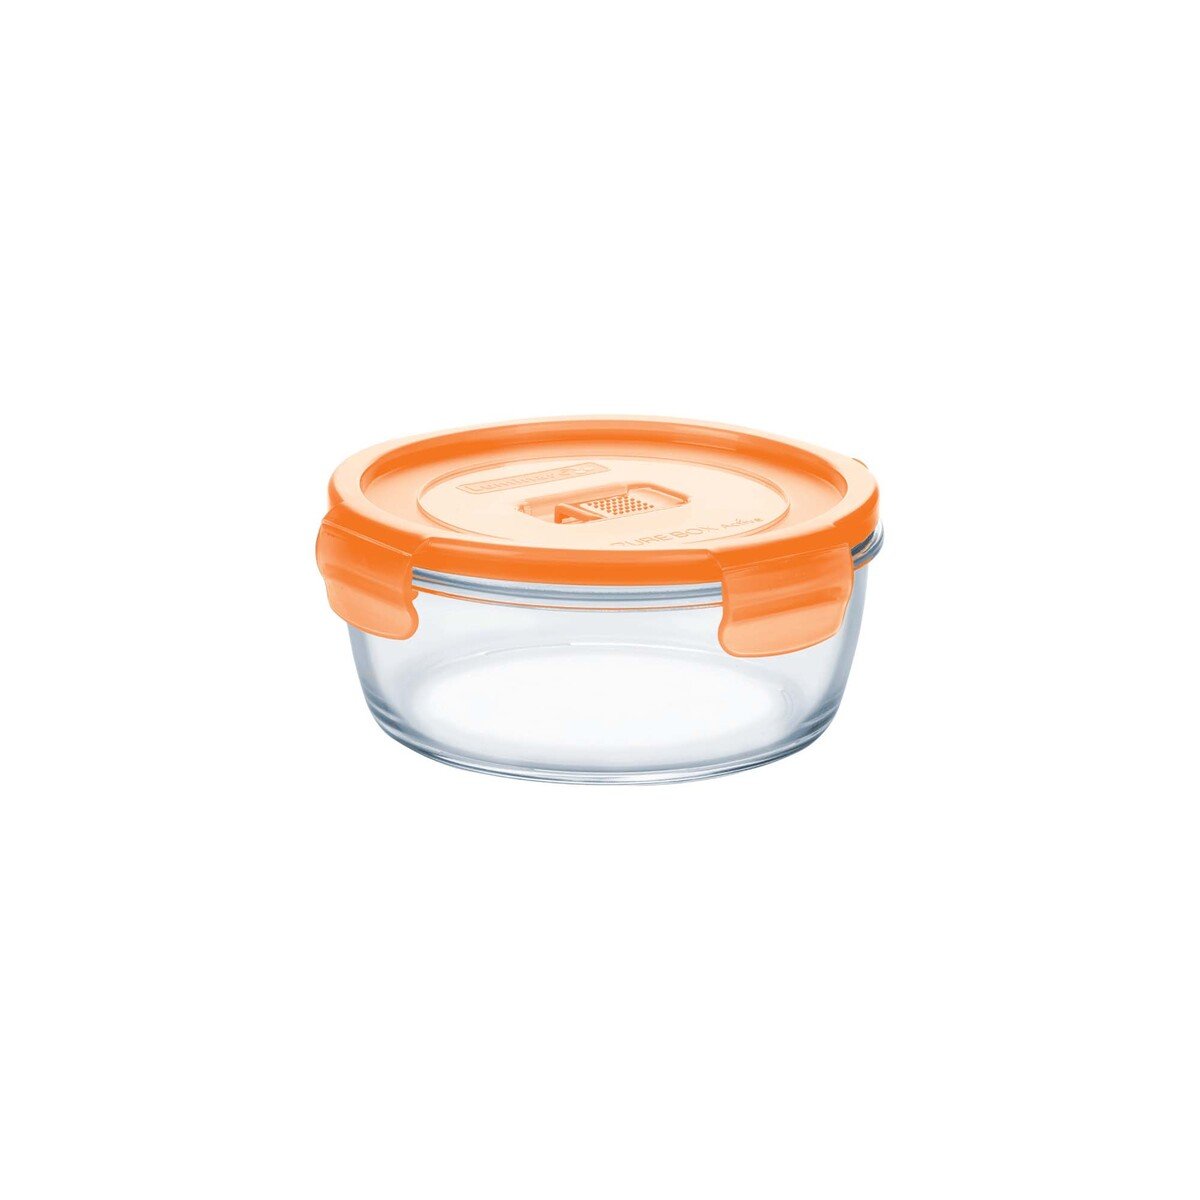 Luminarc Pure Box Active Round Food Container, 42 cl, Orange, P4585